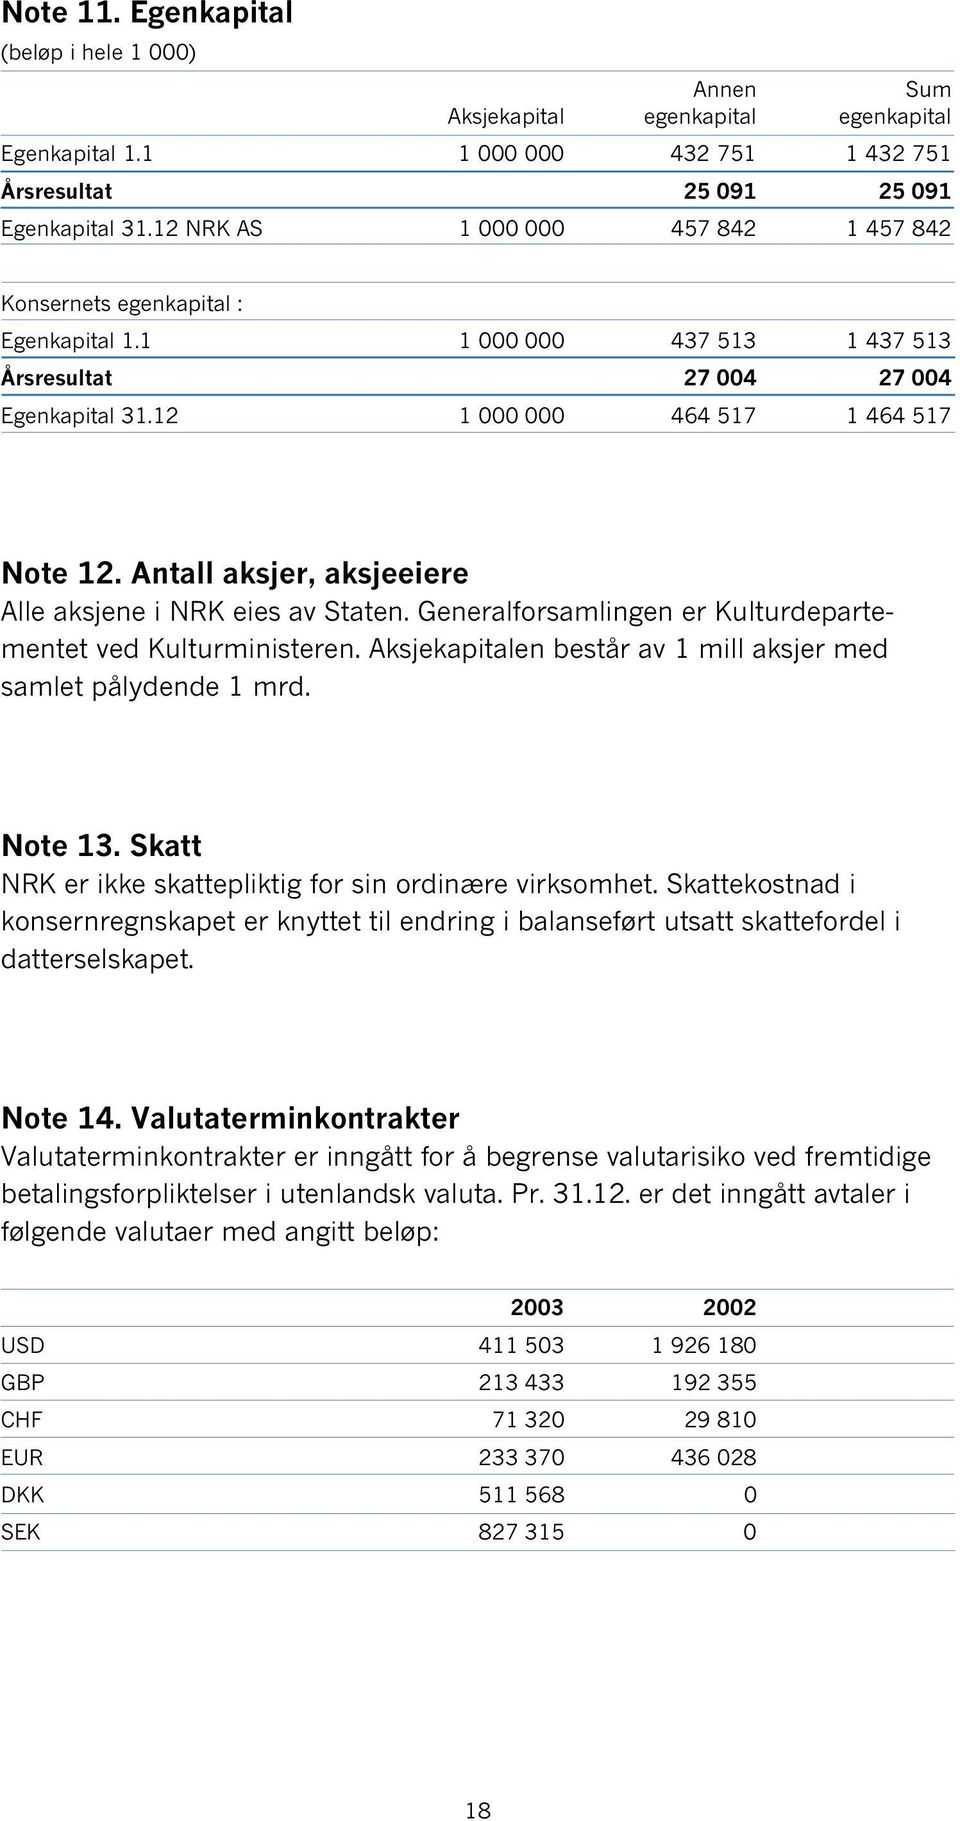 Antall aksjer, aksjeeiere Alle aksjene i NRK eies av Staten. Generalforsamlingen er Kulturdepartementet ved Kulturministeren. Aksjekapitalen består av 1 mill aksjer med samlet pålydende 1 mrd.